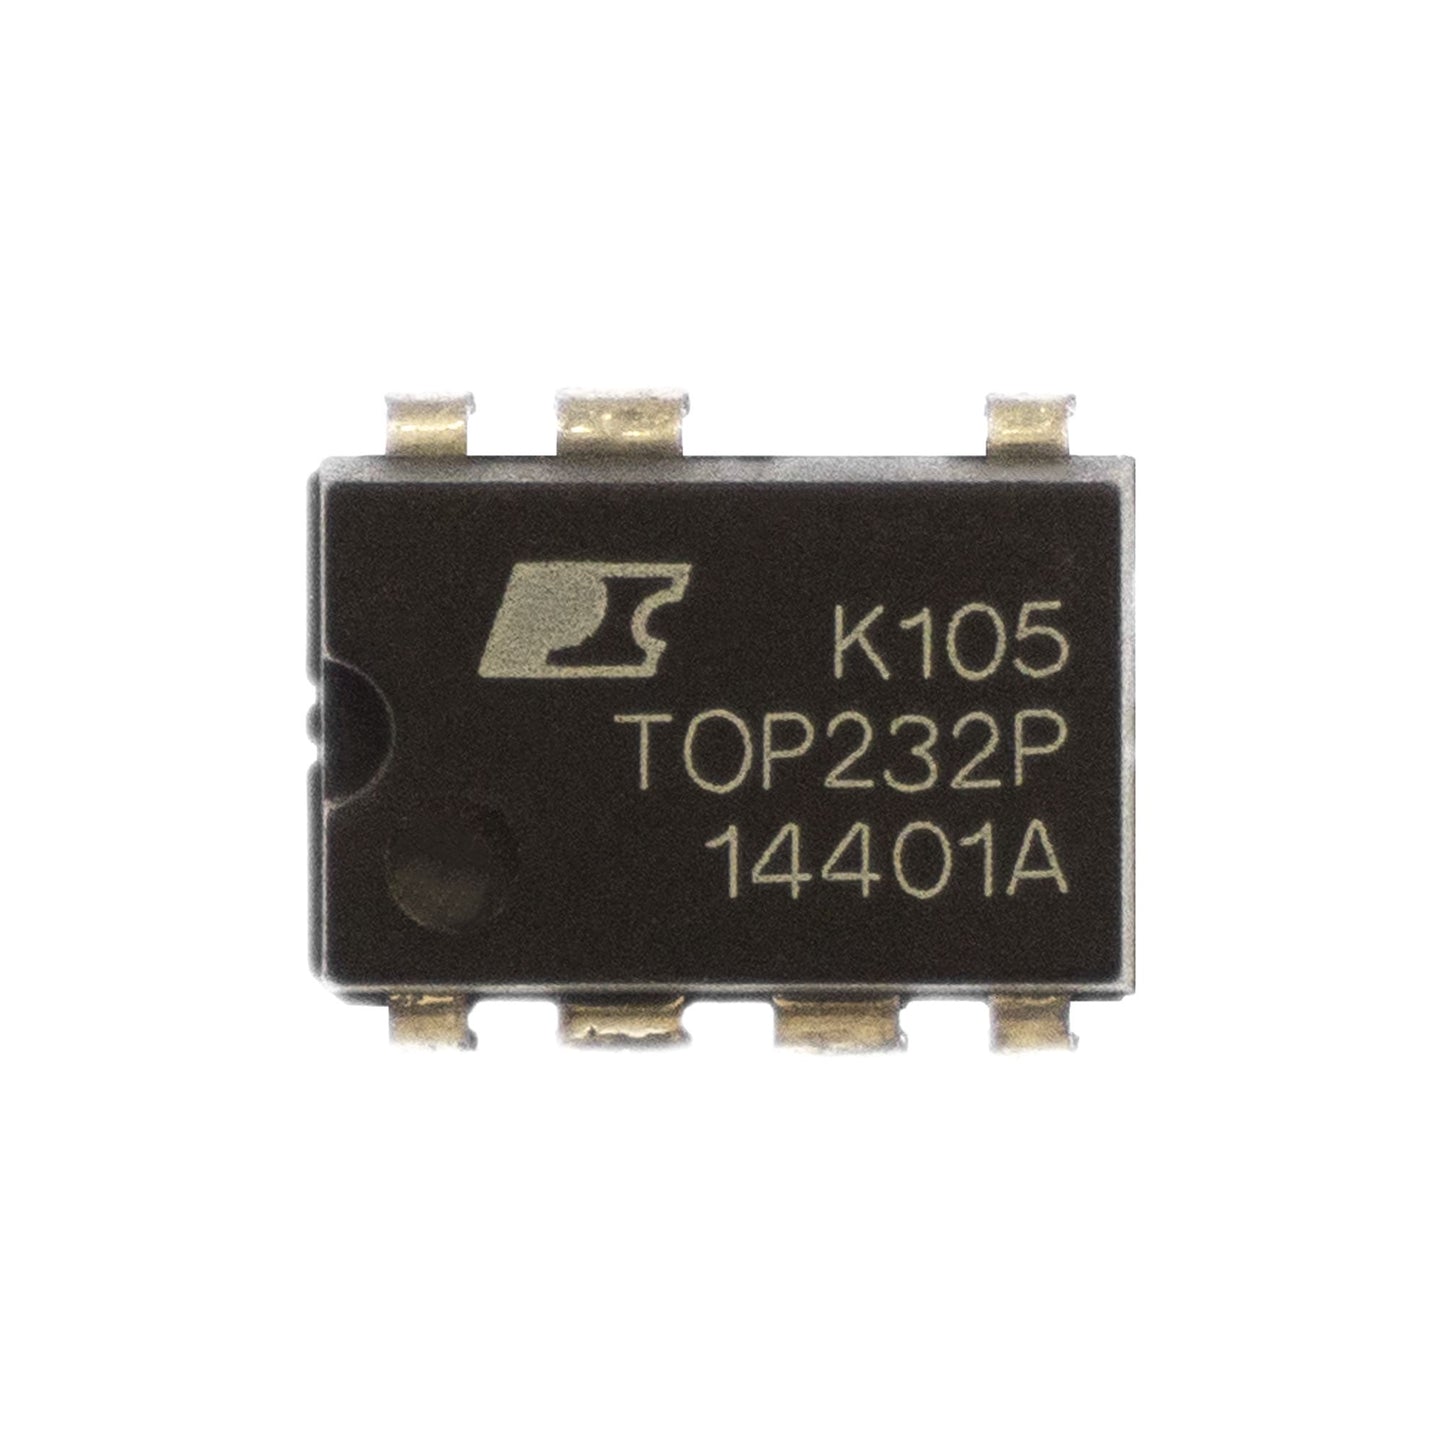 TOP232P circuito integrato, transistor, componente elettronico, 7 contatti